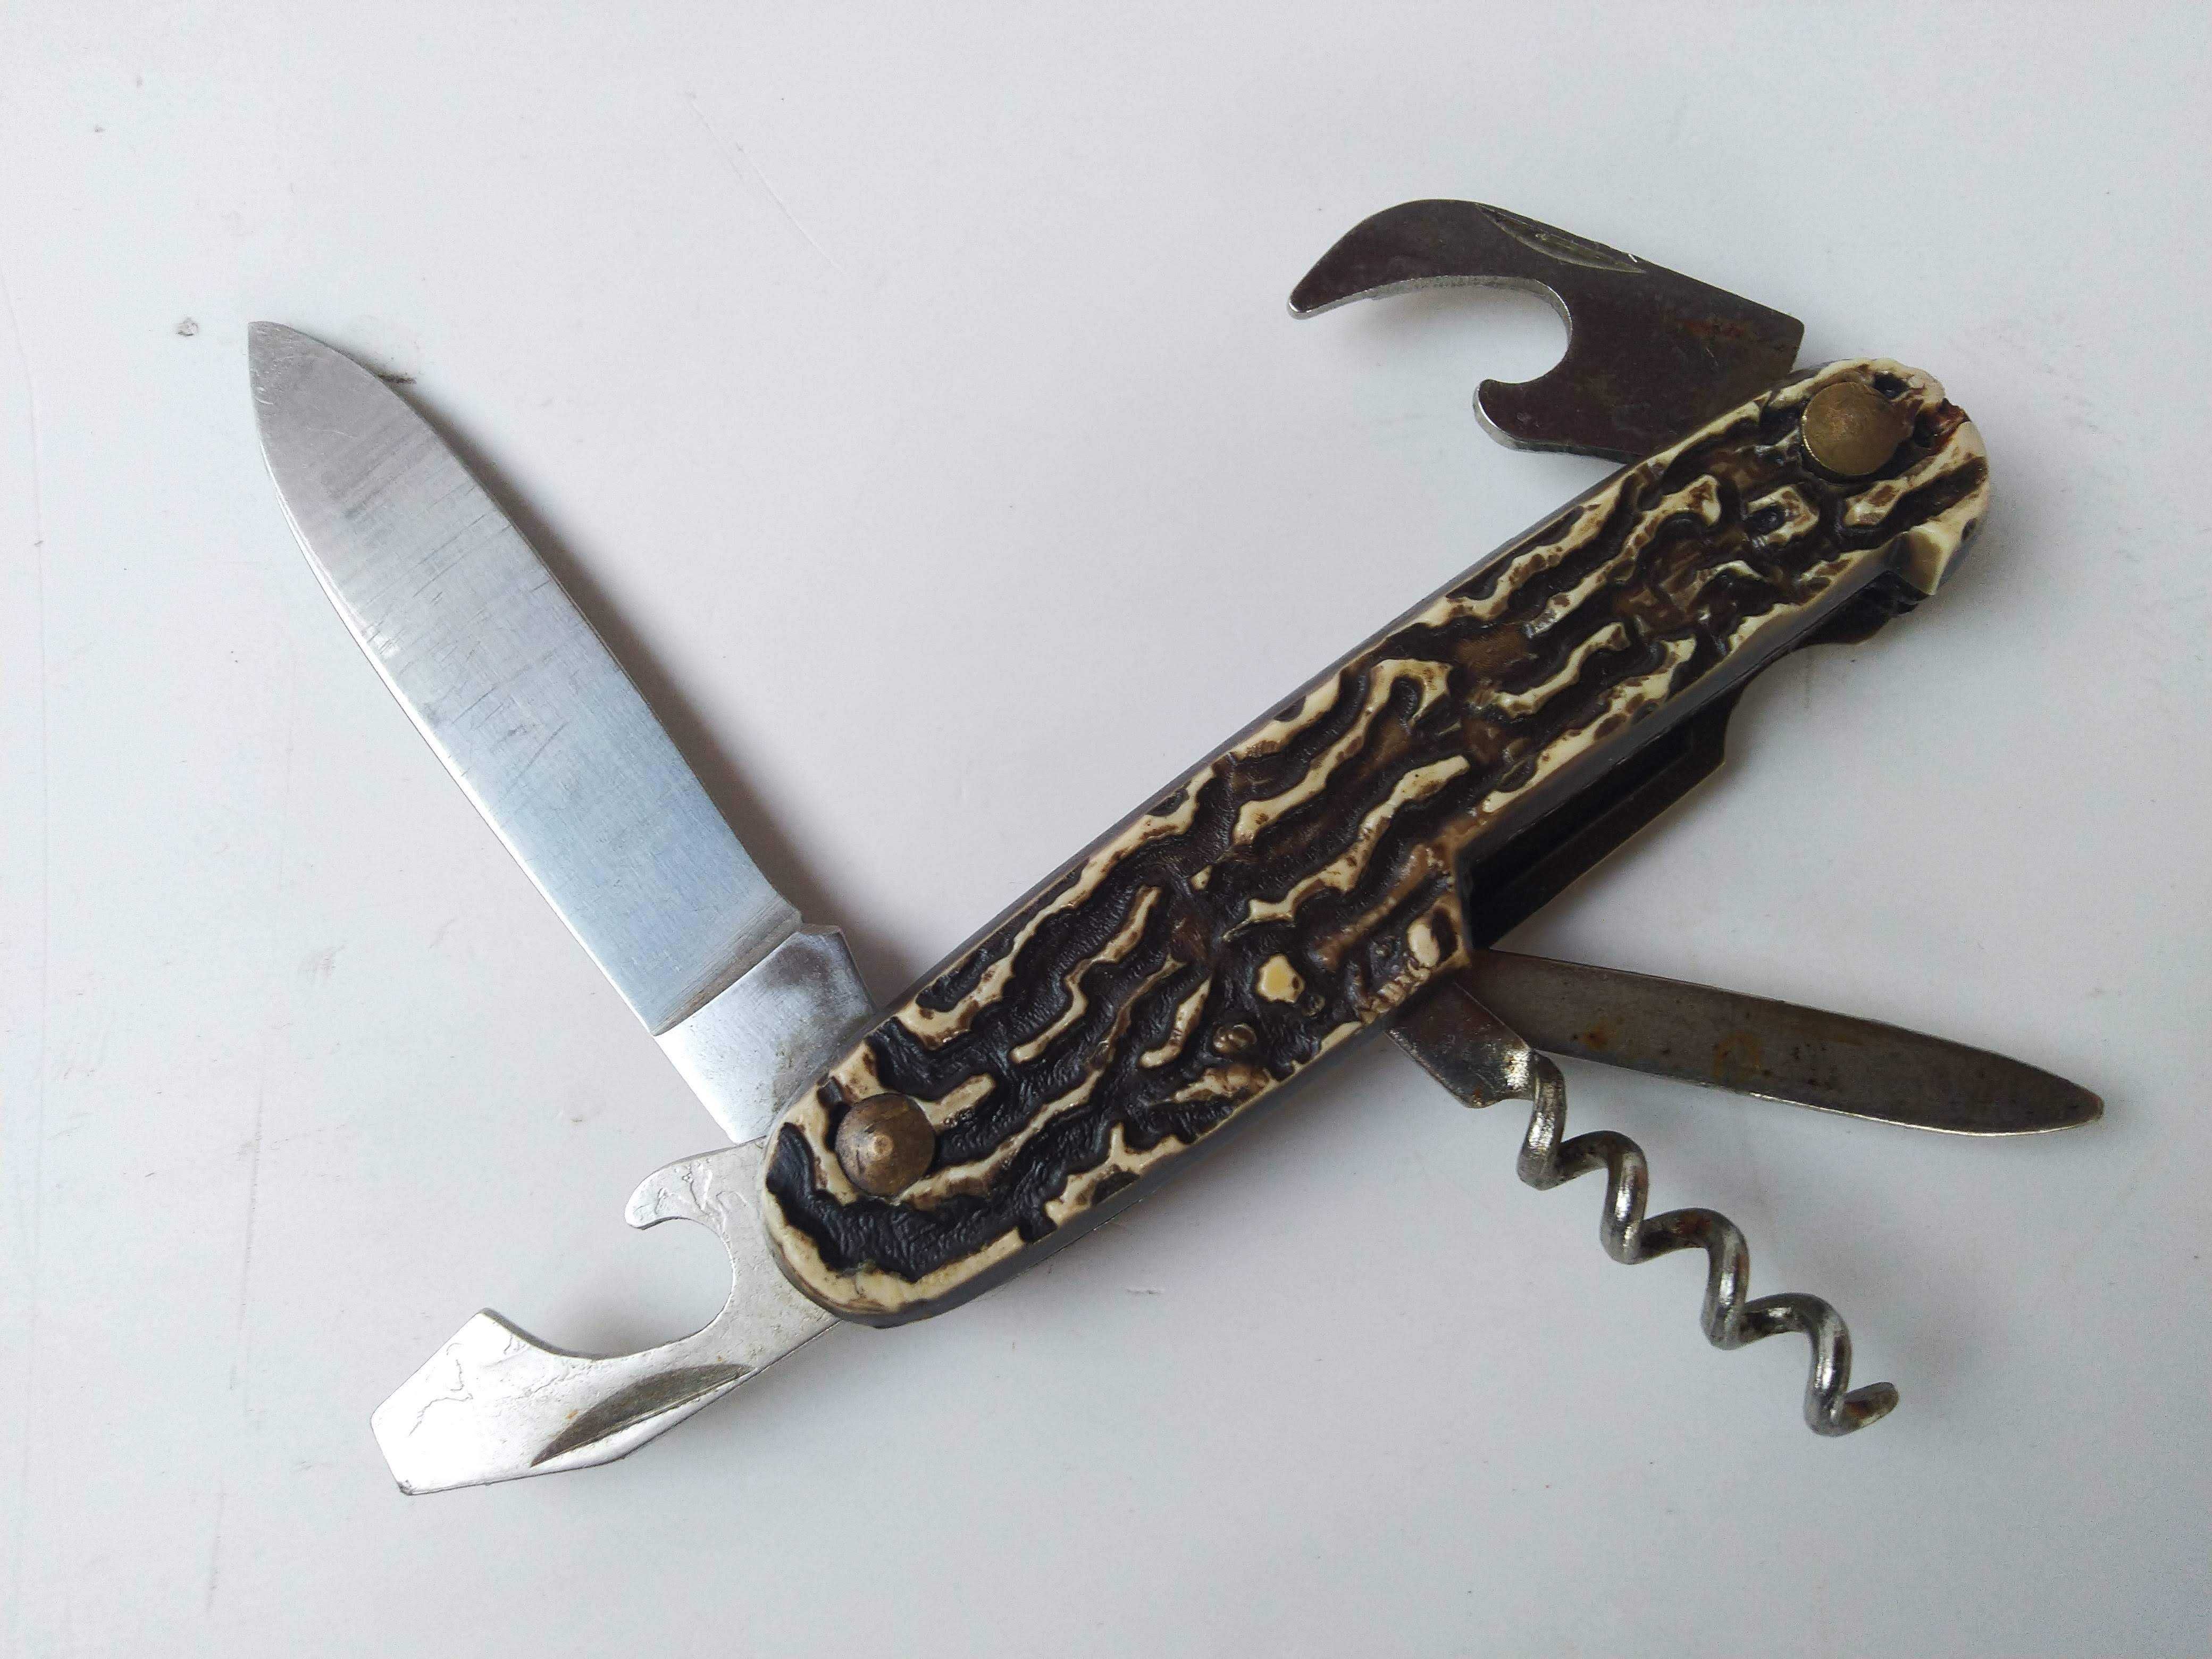 Раритетный винтаж немецкий ножик Rostfrei олень шило открывашка штопор